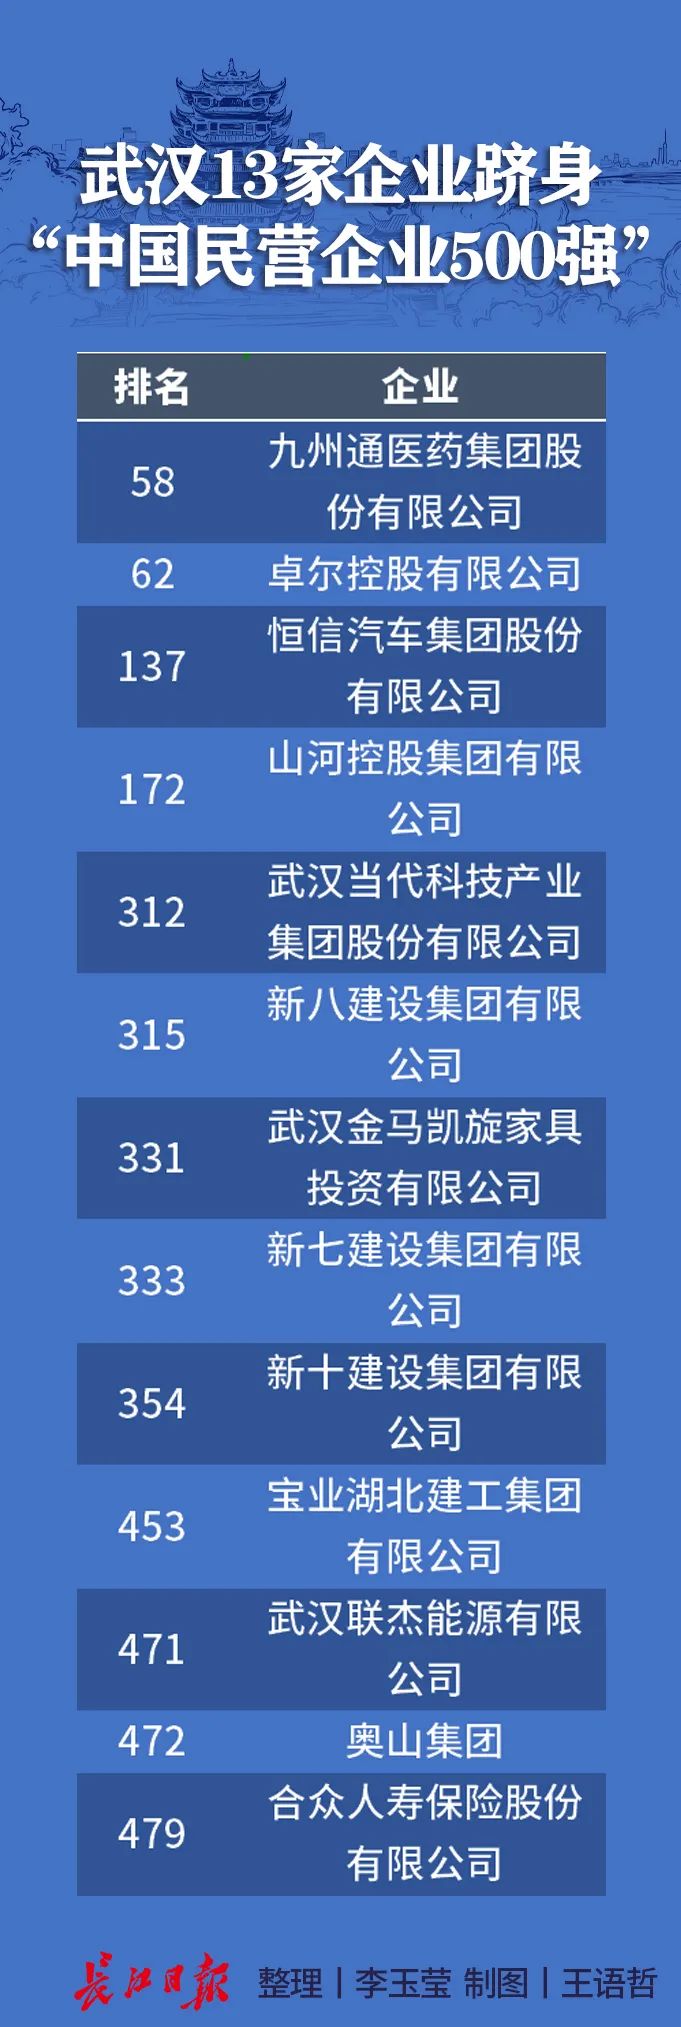 武汉500强企业排名2_武汉这2所高校三榜世界大学排名均列全球500强